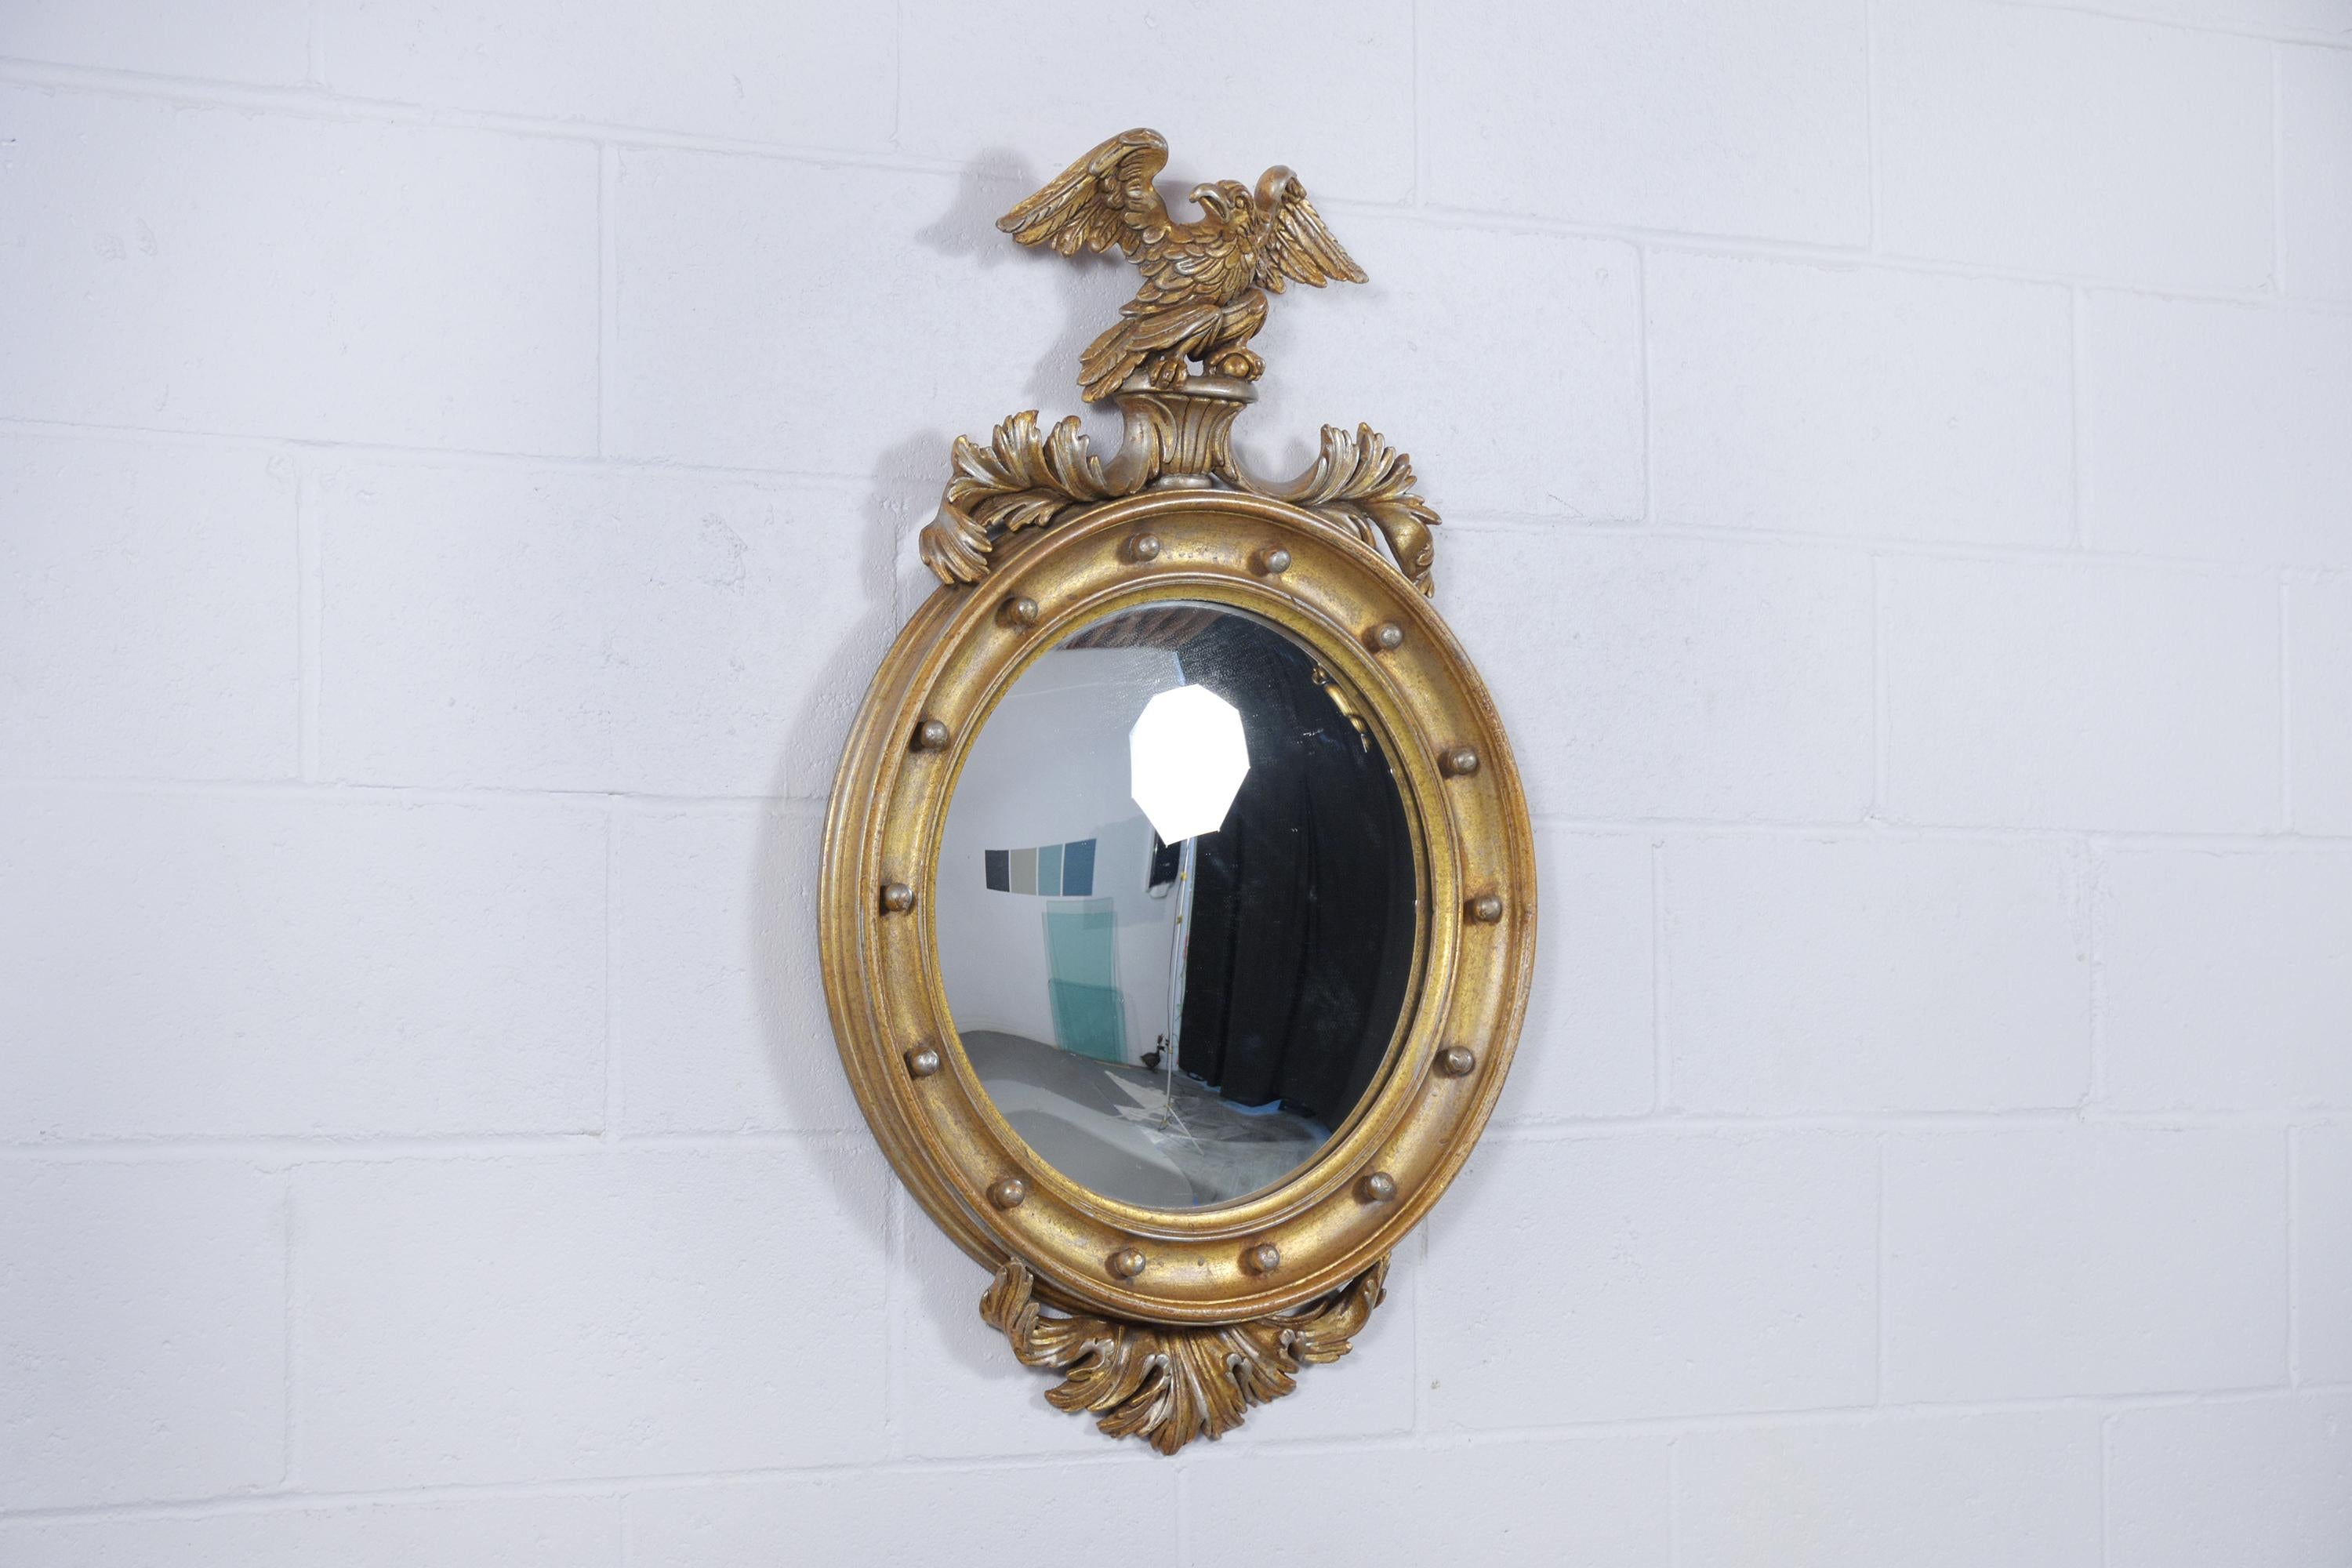 Tauchen Sie ein in die Raffinesse unseres ovalen Wandspiegels im italienisch-amerikanischen Federal-Stil. Dieses exquisite Stück ist aus hochwertigem Ahornholz handgefertigt und zeugt von der Finesse und dem Können traditioneller Handwerkskunst. Mit